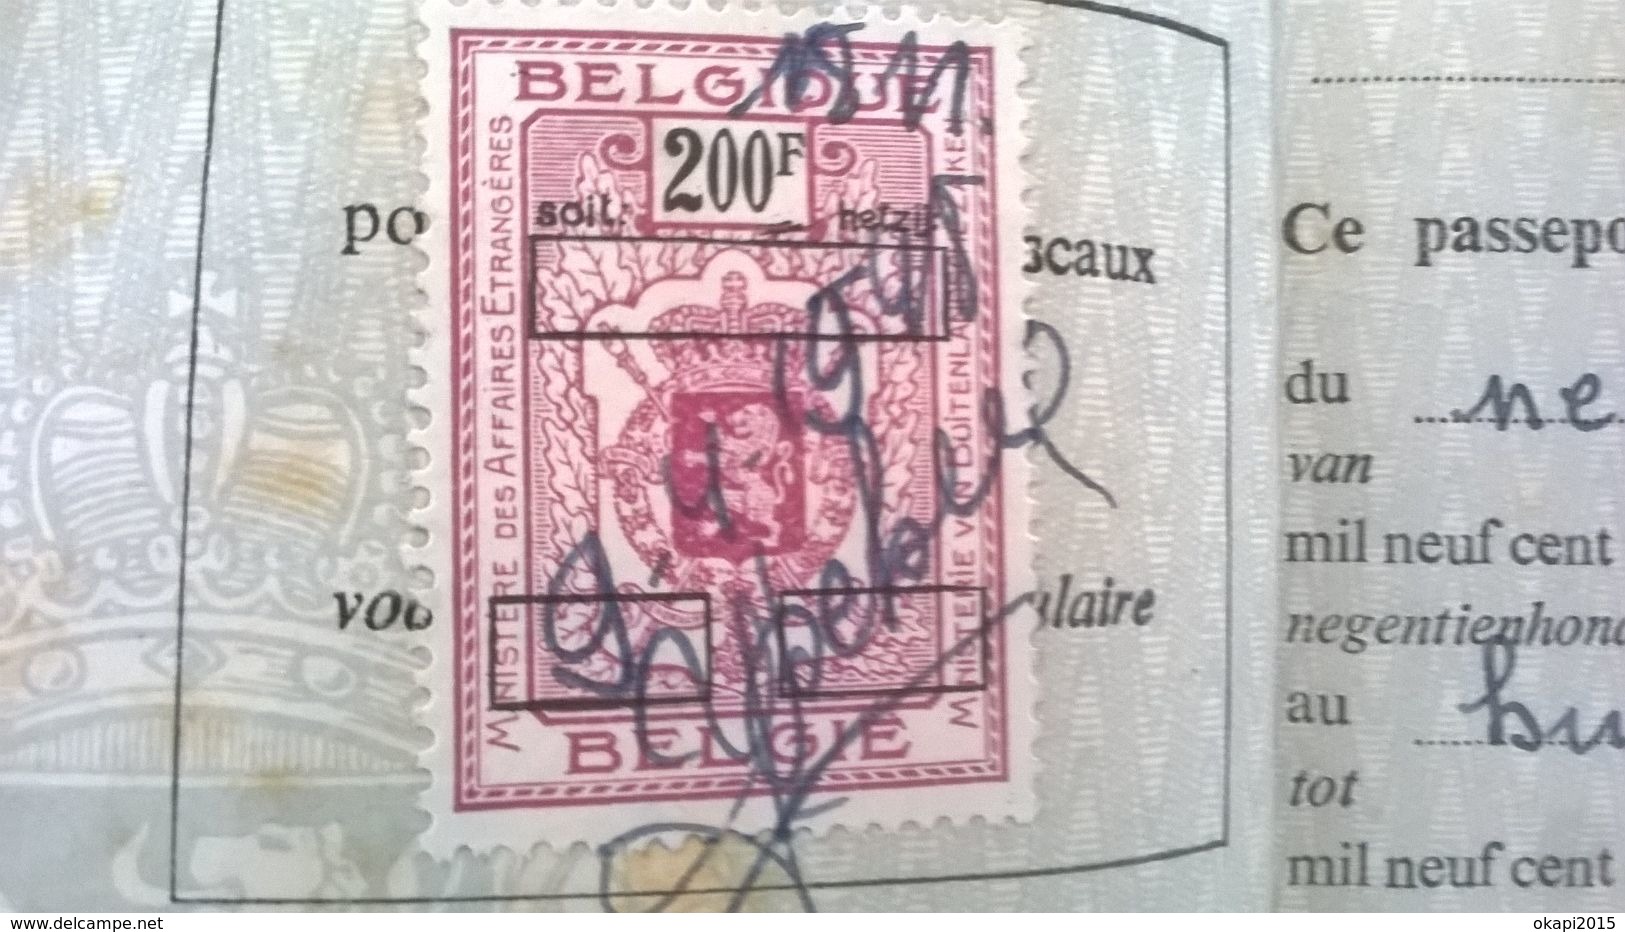 VIEUX PASSEPORT BELGIQUE REISPAS BELGIË  PASSPORT BELGIUM EN PAPIER ET EN CARTON ANNÉE 1948 . GUERRE 1940 - 1945. - Historical Documents